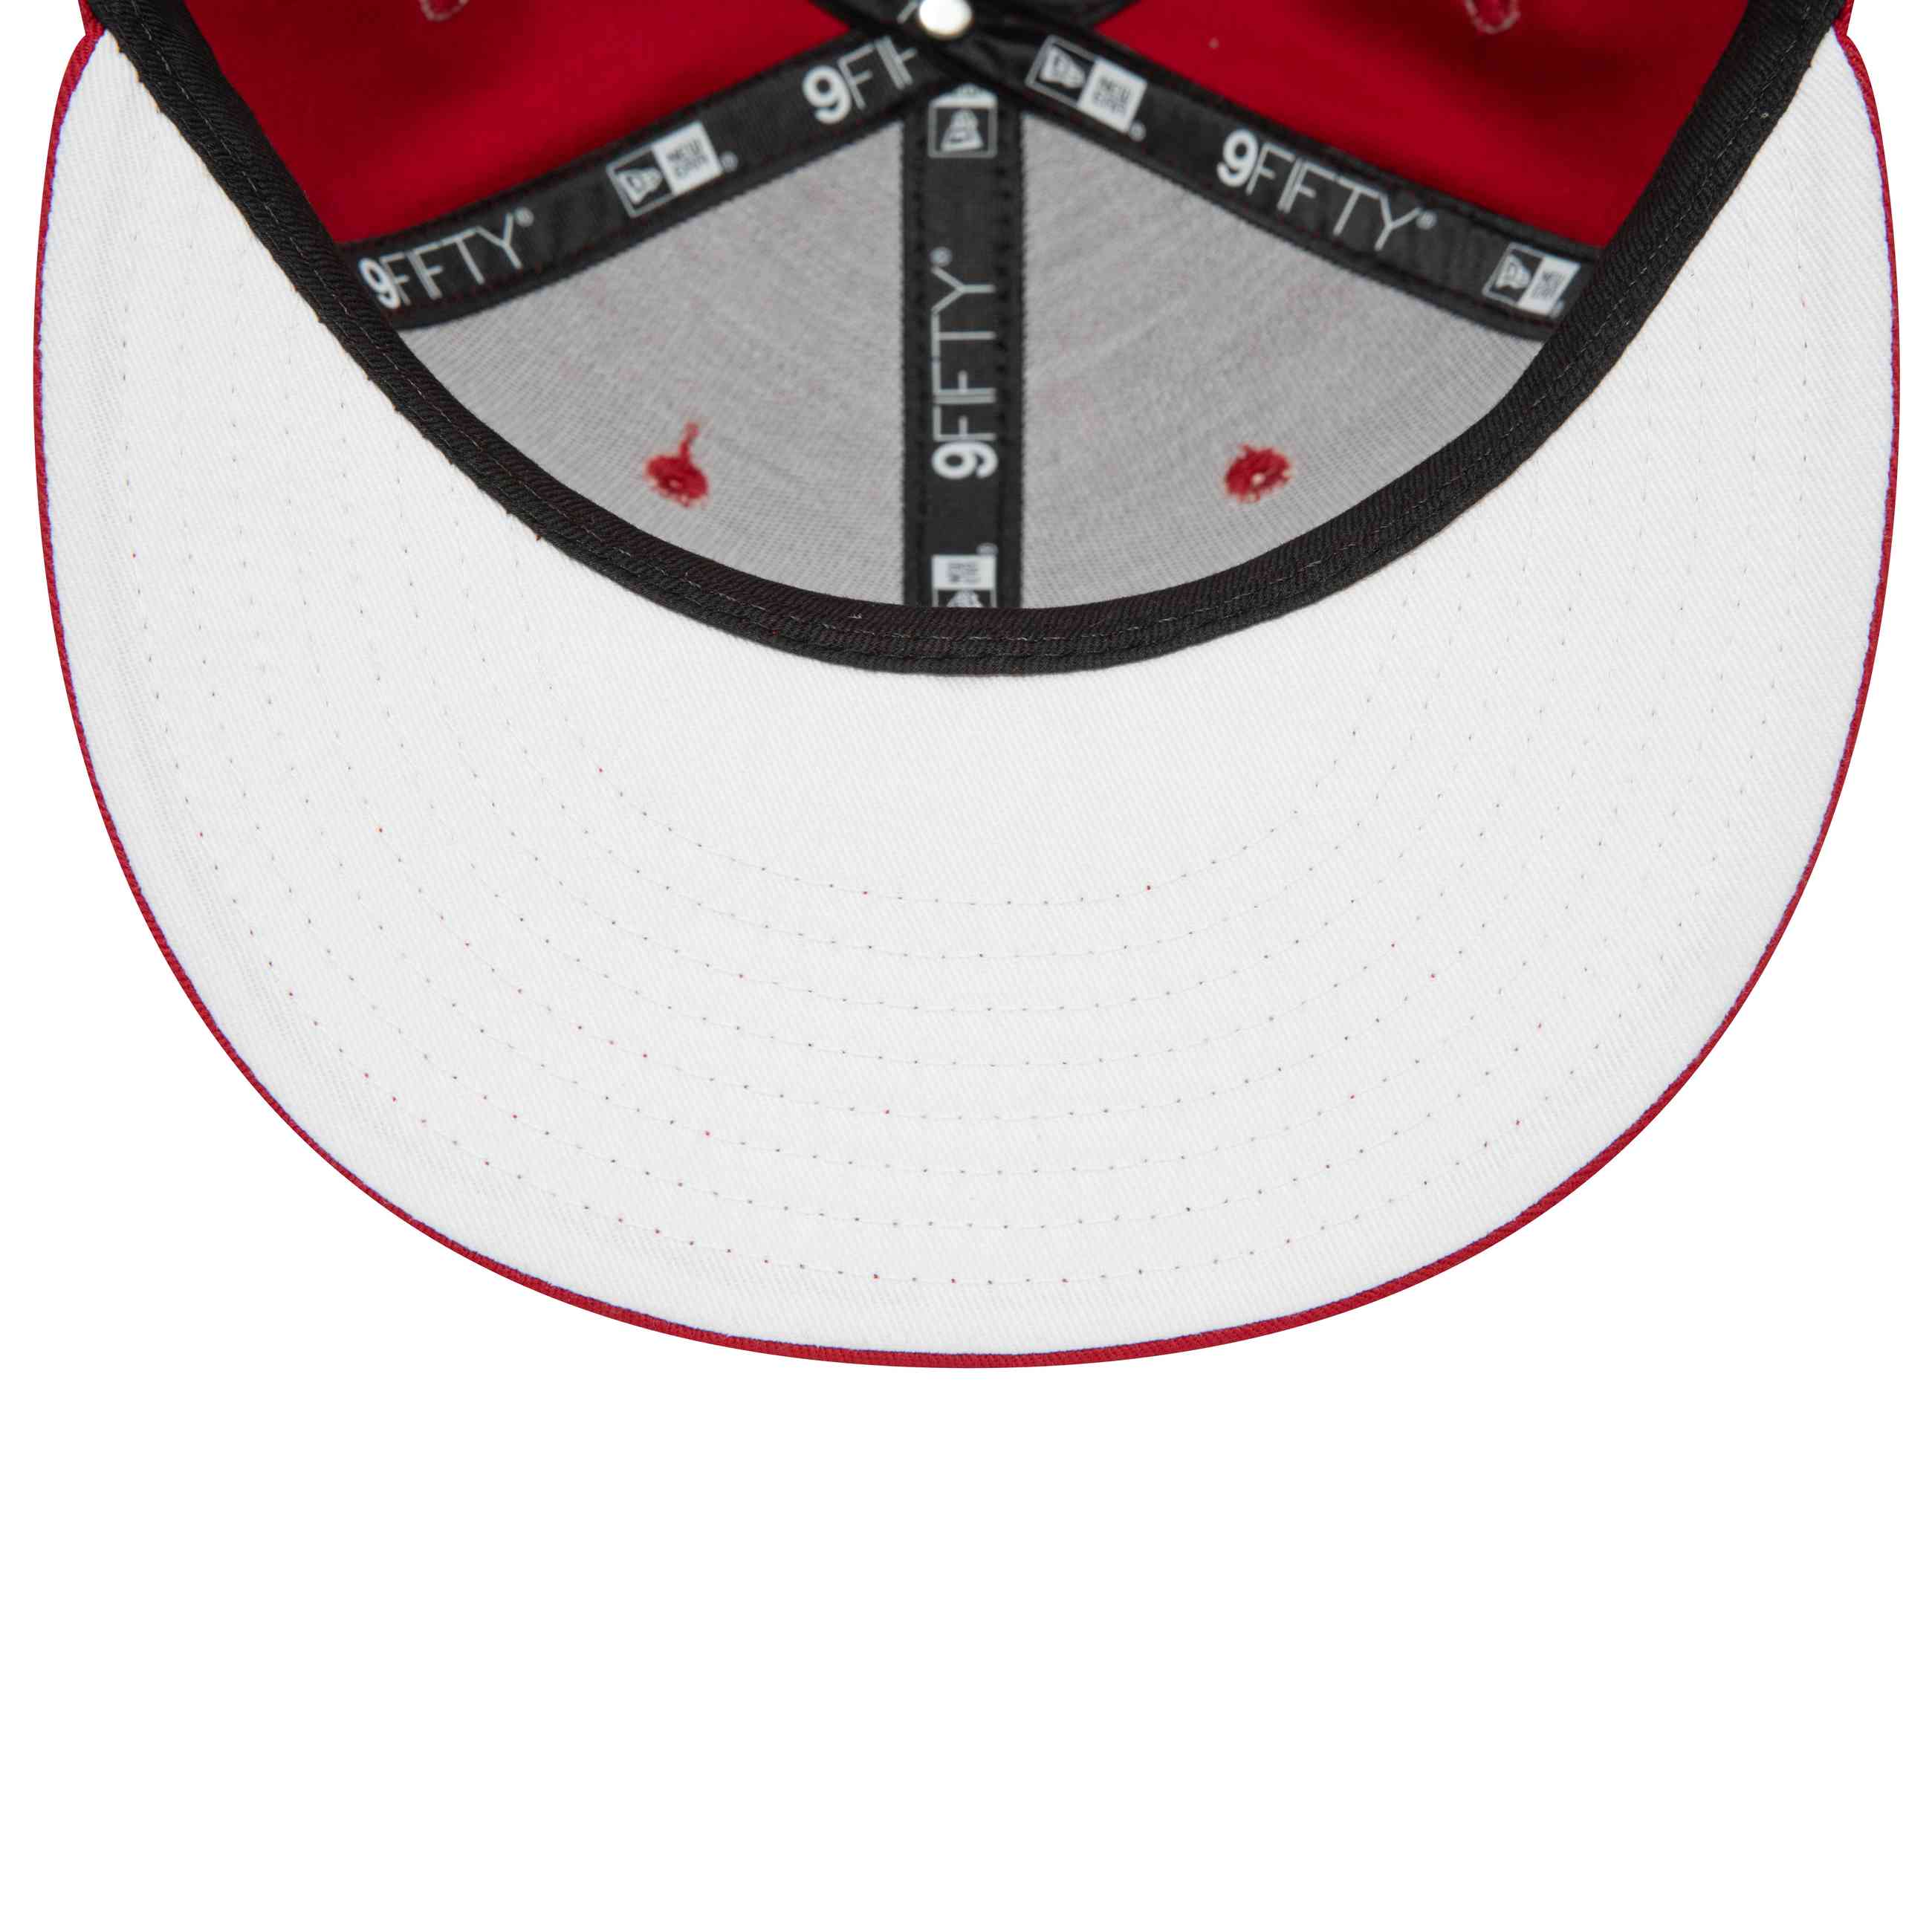 New Era - NBA Miami Heat Rear Logo 9Fifty Snapback Cap